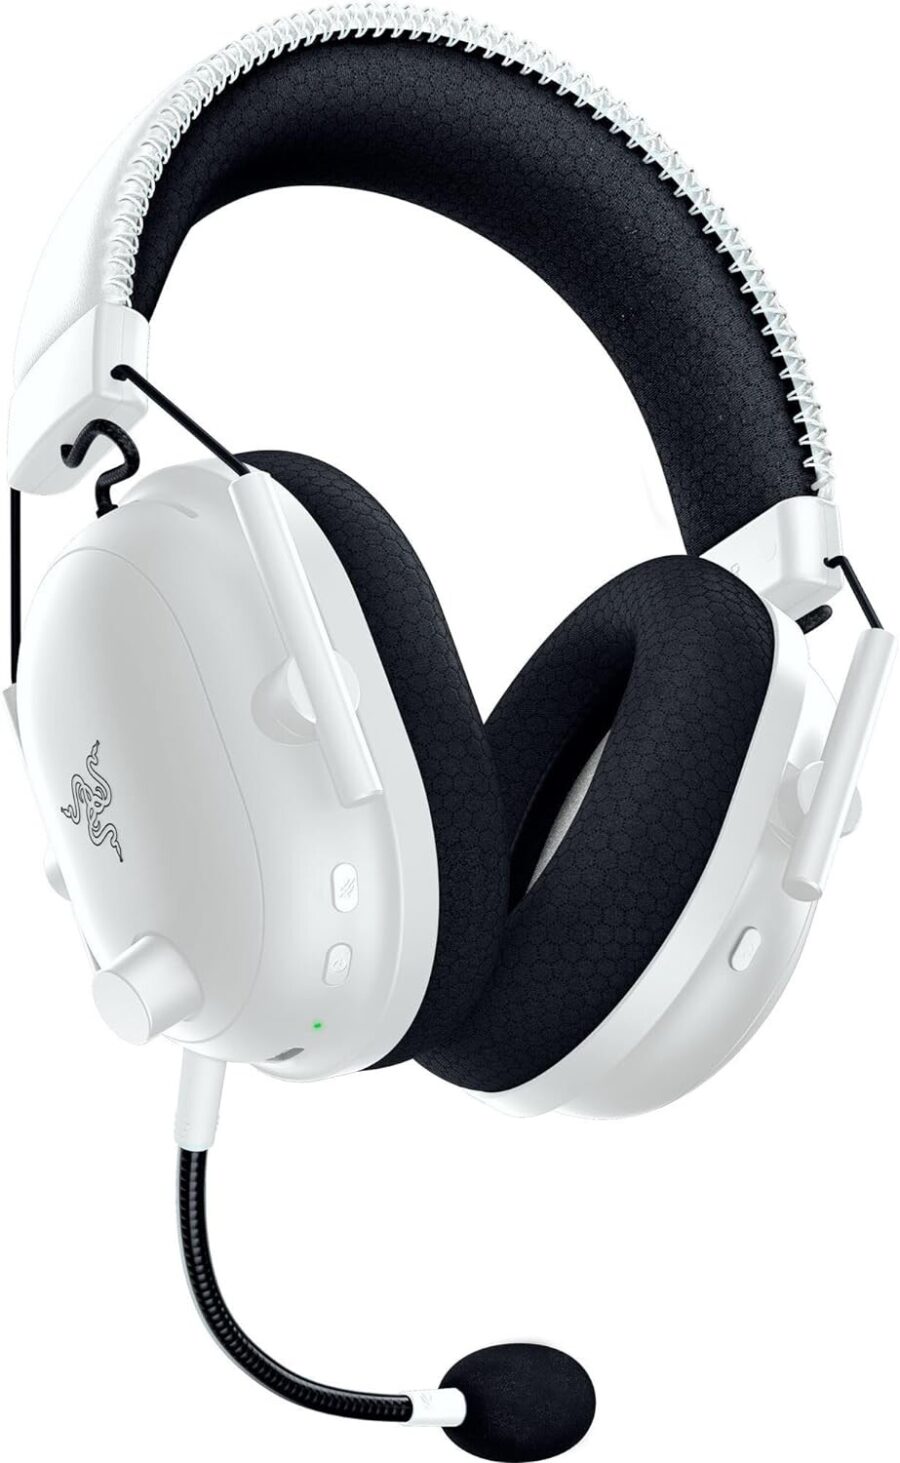 Razer - BlackShark V2 Pro Gaming Headset (PlayStation Licensed) - White Back Angled View